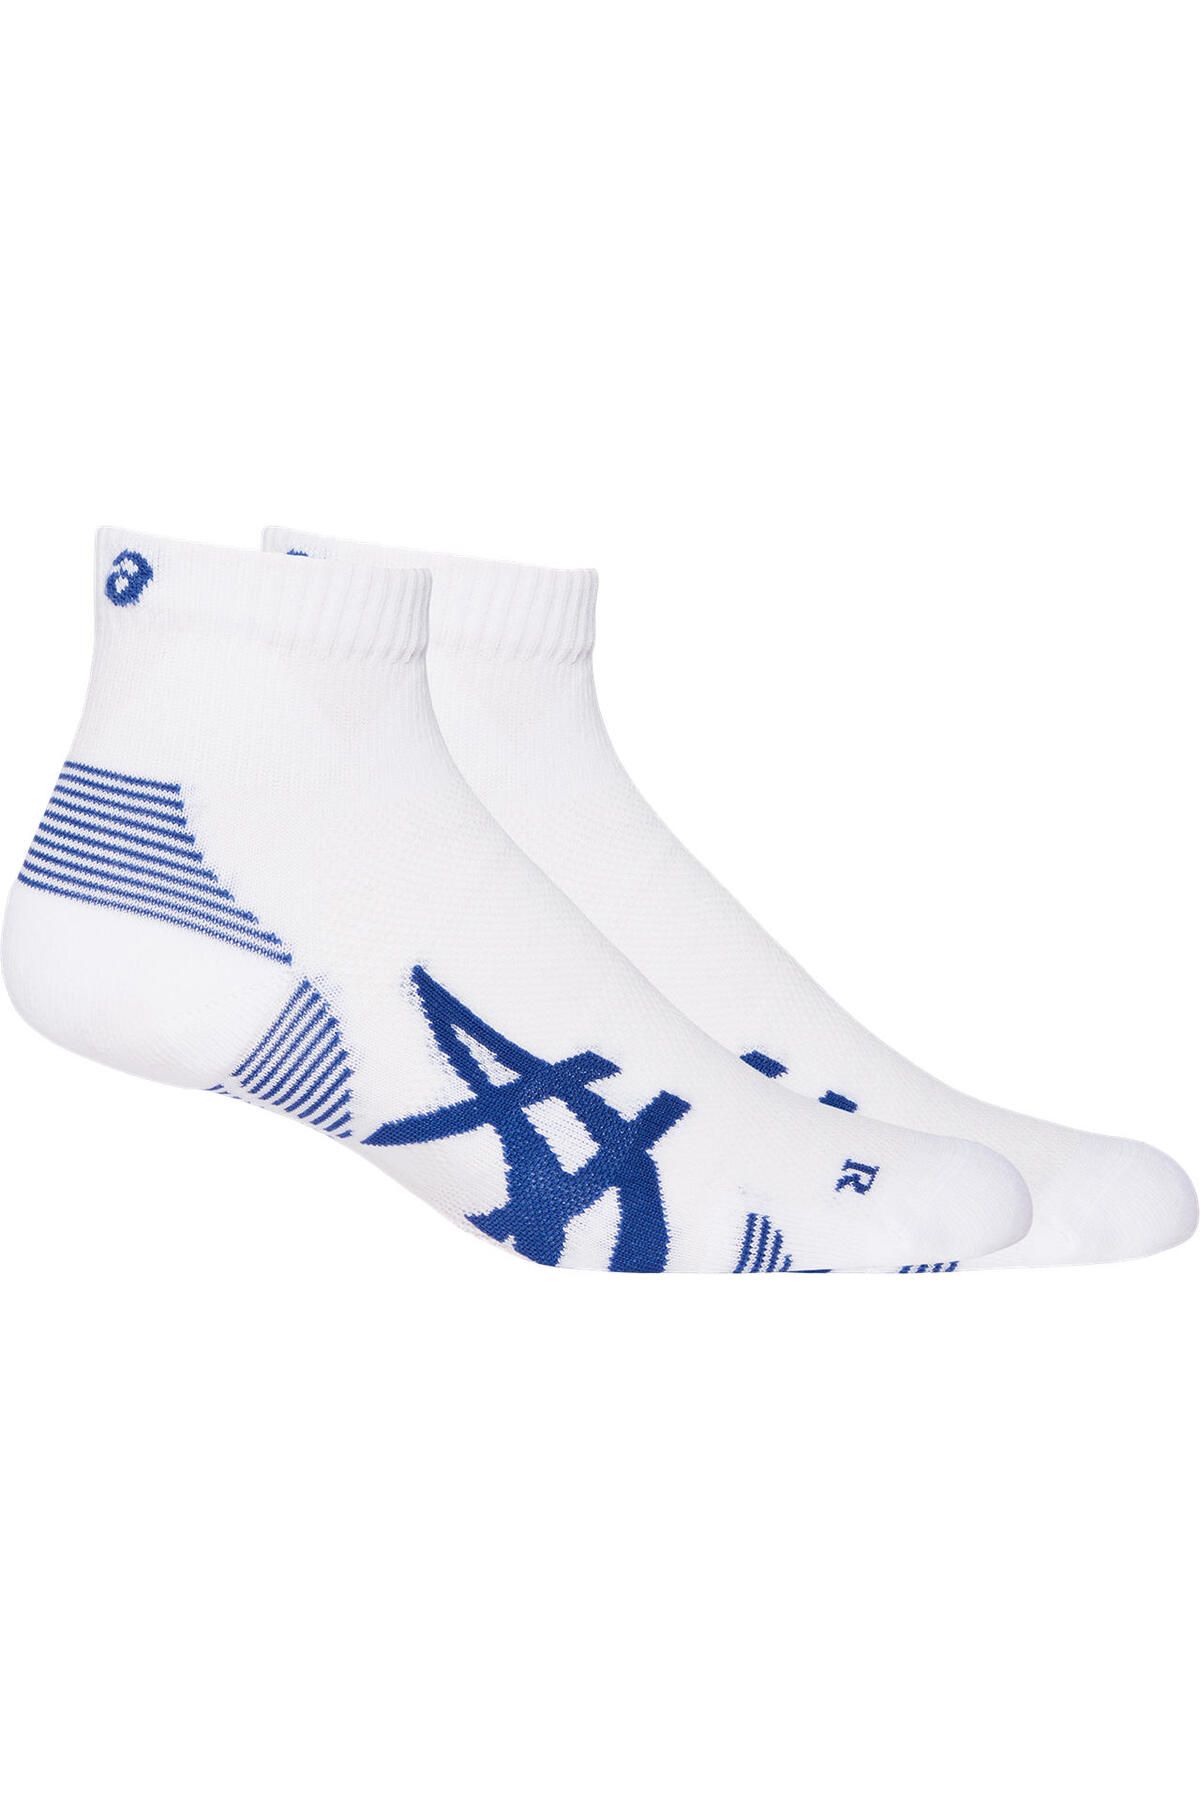 Asics 2ppk Cushion Run Quarter Sock Unisex Beyaz Çorap 3013a800-100 3013A800-100